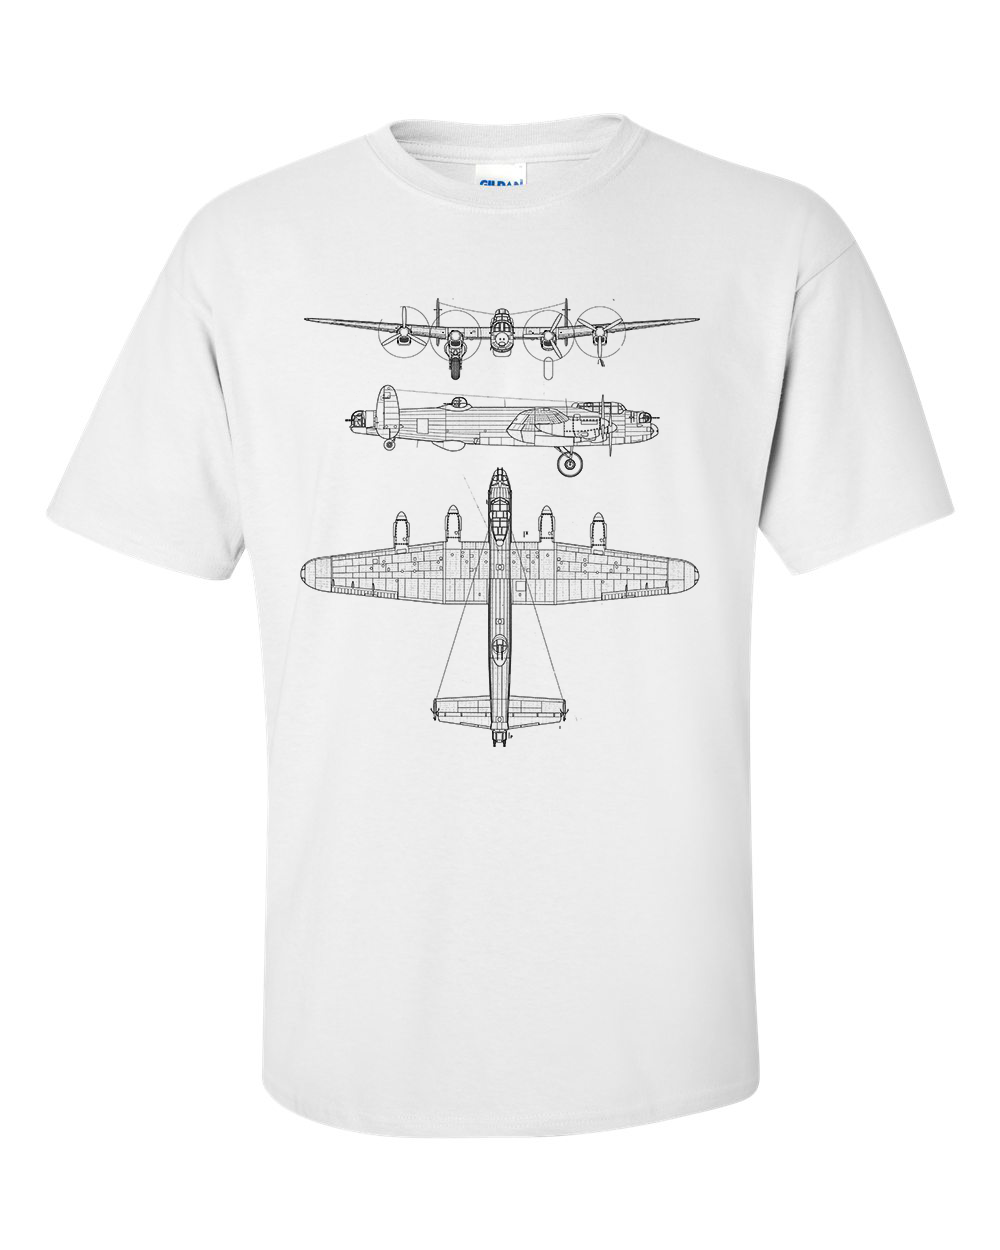 Lancaster Bomber T-Shirt Technical Drawing Blueprint Aircraft RAF WW2 Shirt